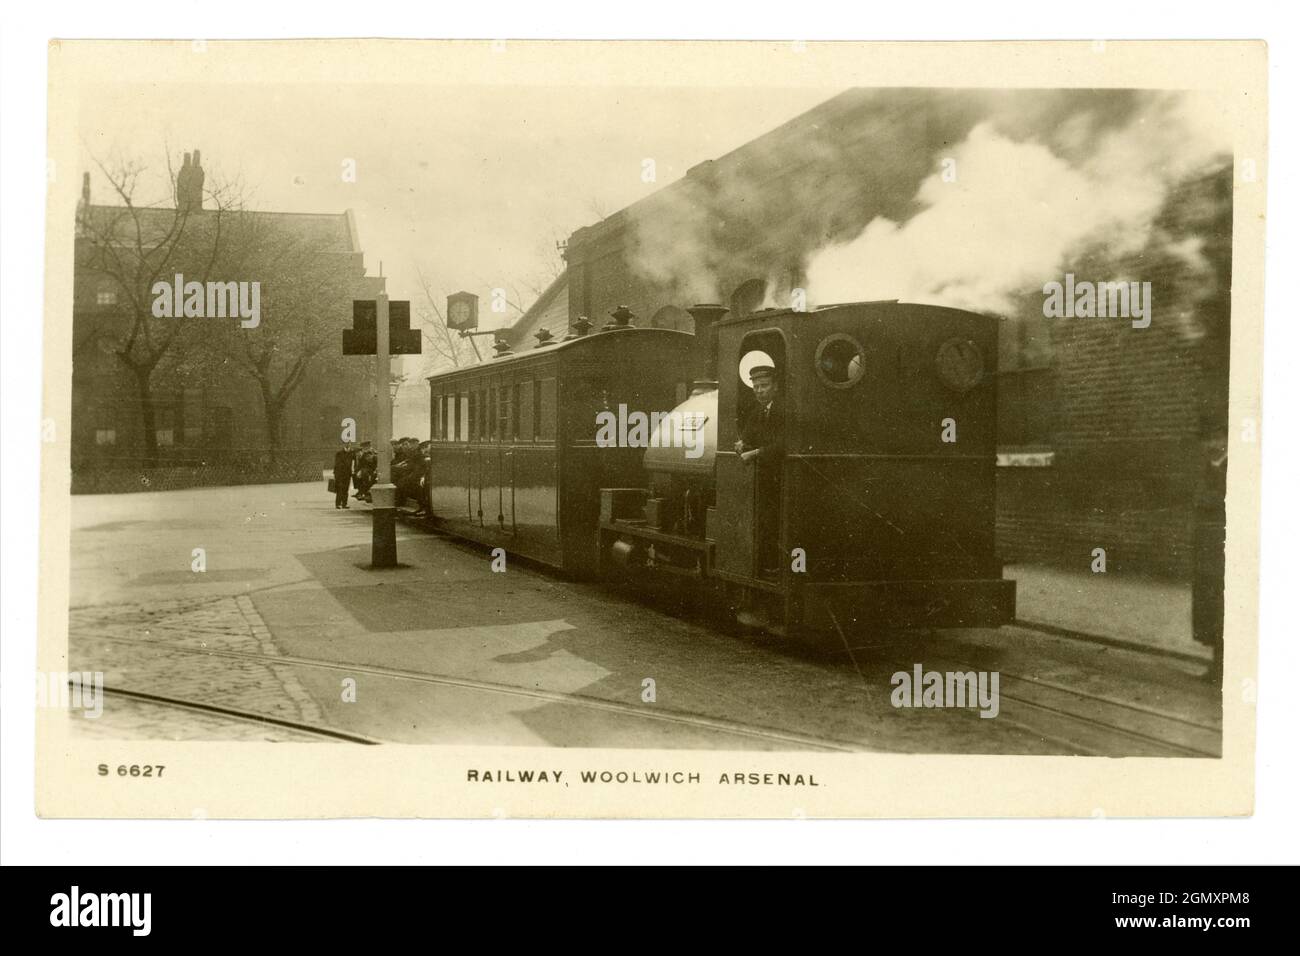 Postkarte aus der Zeit WW1 des Eisenbahnmotors (es gab 3) mit Fahrer, der auf einer Plattform wartete - für den Transport von Munitionsmaterial, das Woolwich Arsenal diente. Genannt Royal Arsenal Railway London. Arsenal war eine Schalenfüllfabrik. 1914-1918 Stockfoto